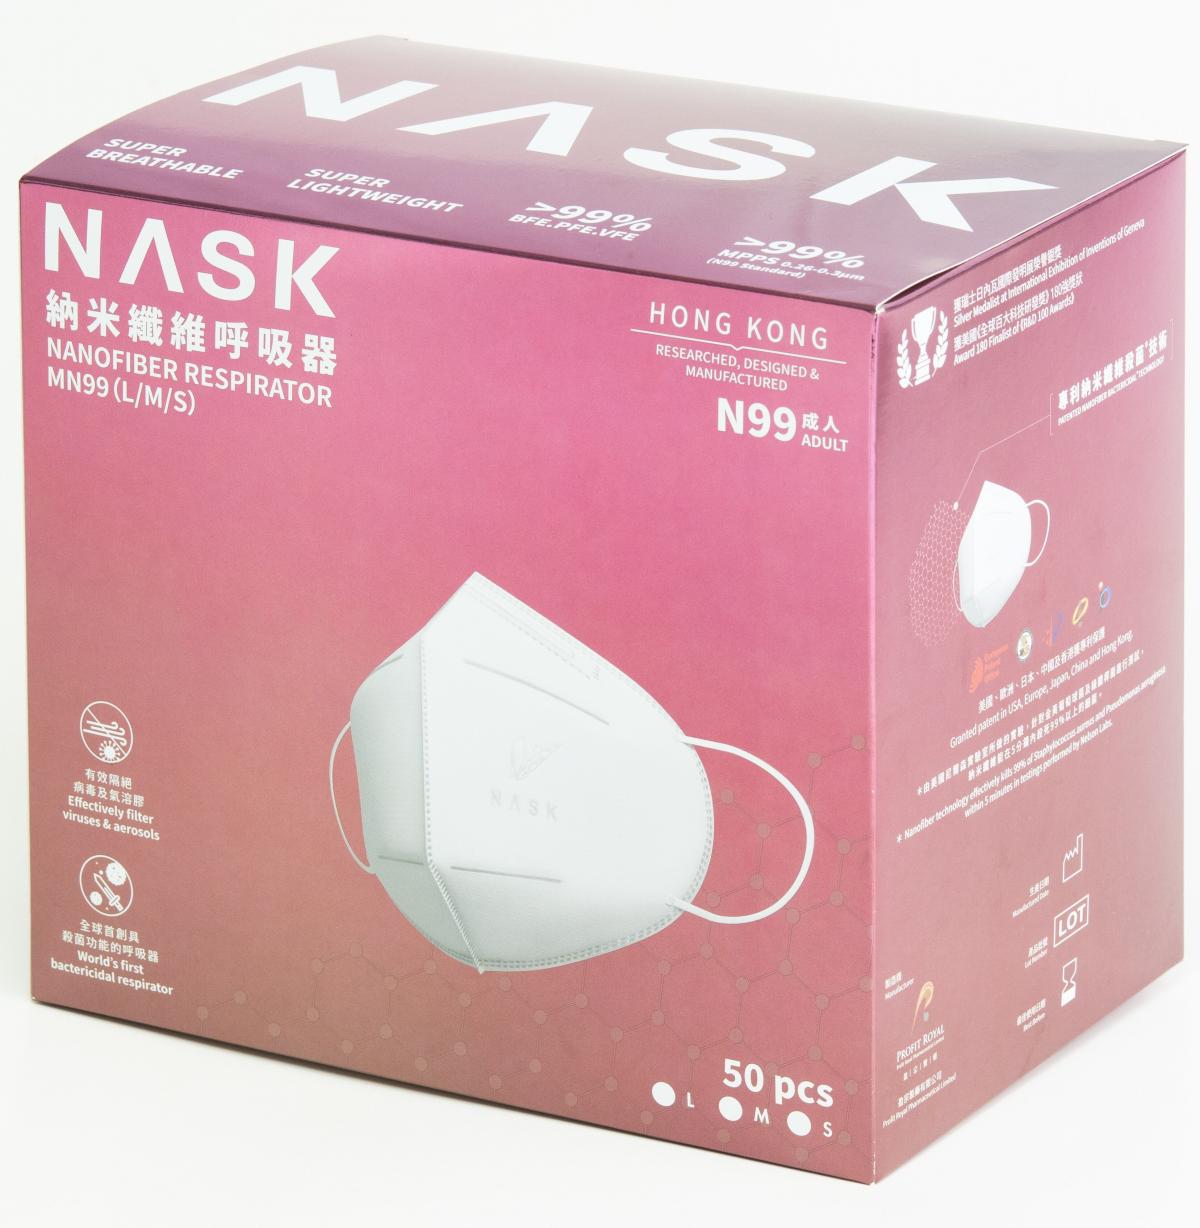 NASK 納米纖維呼吸器 (N99 成人) (50片裝) (大碼) 新舊包裝, 隨機發放